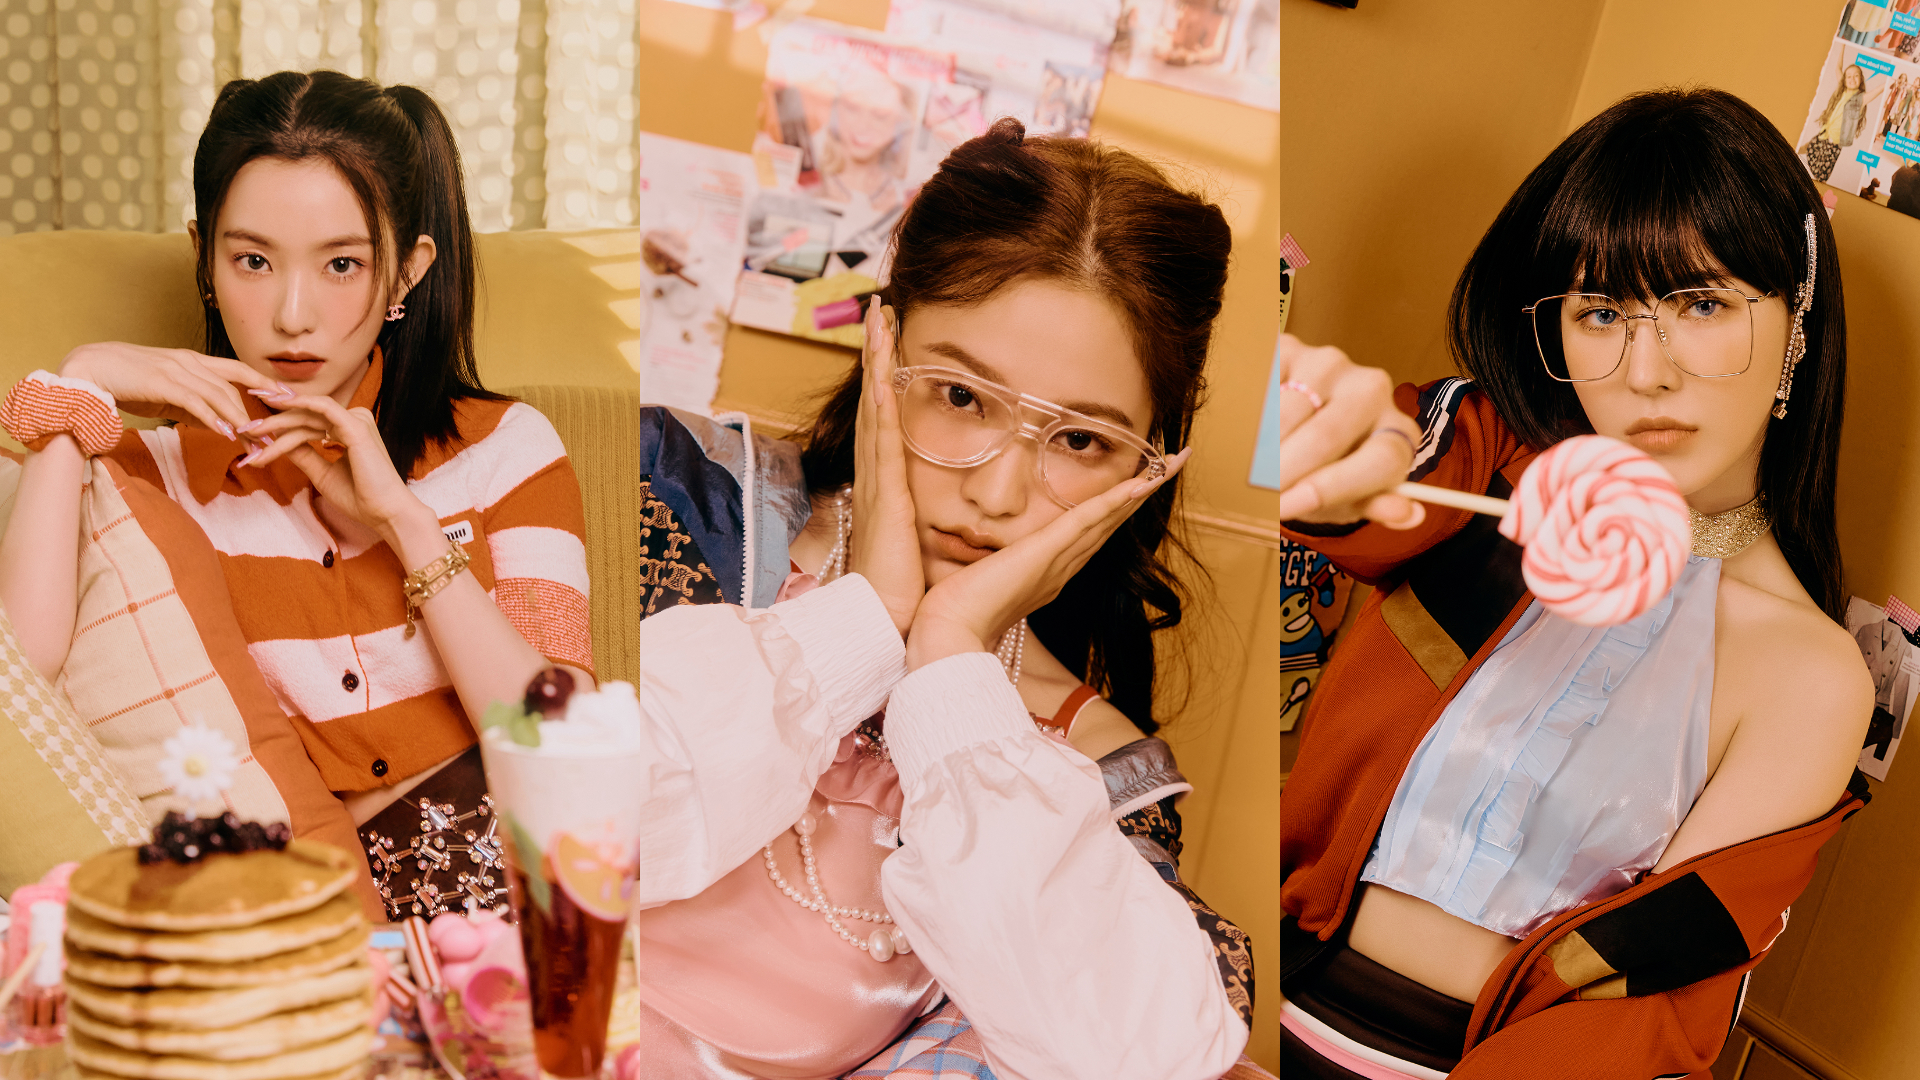 Red Velvet drops photo teasers for Irene, Wendy & Yeri